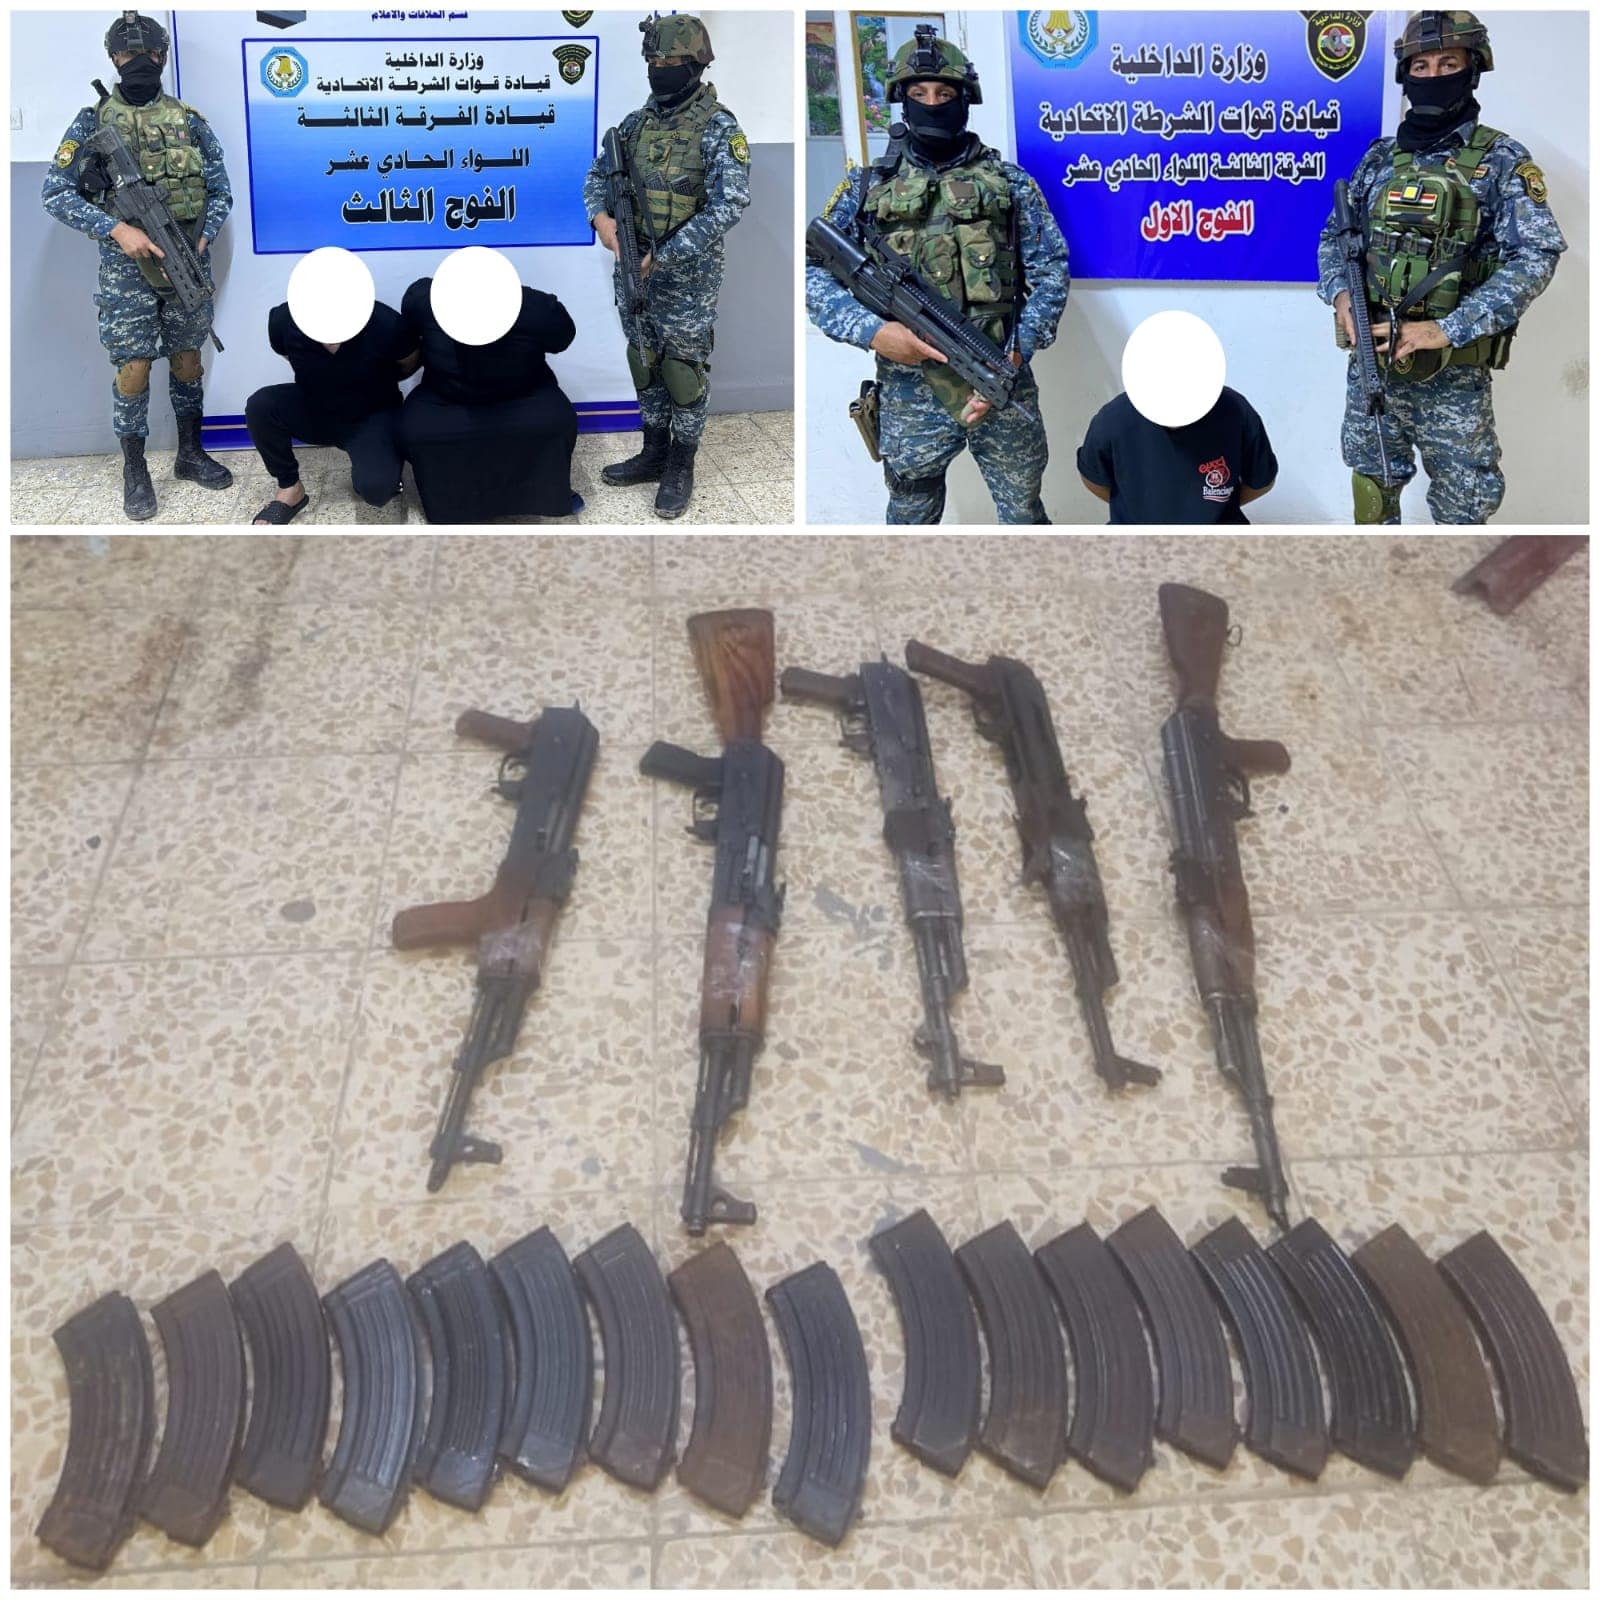 القبض على 15 متهماً وضبط أسلحة غير مرخصة في بغداد وبابل